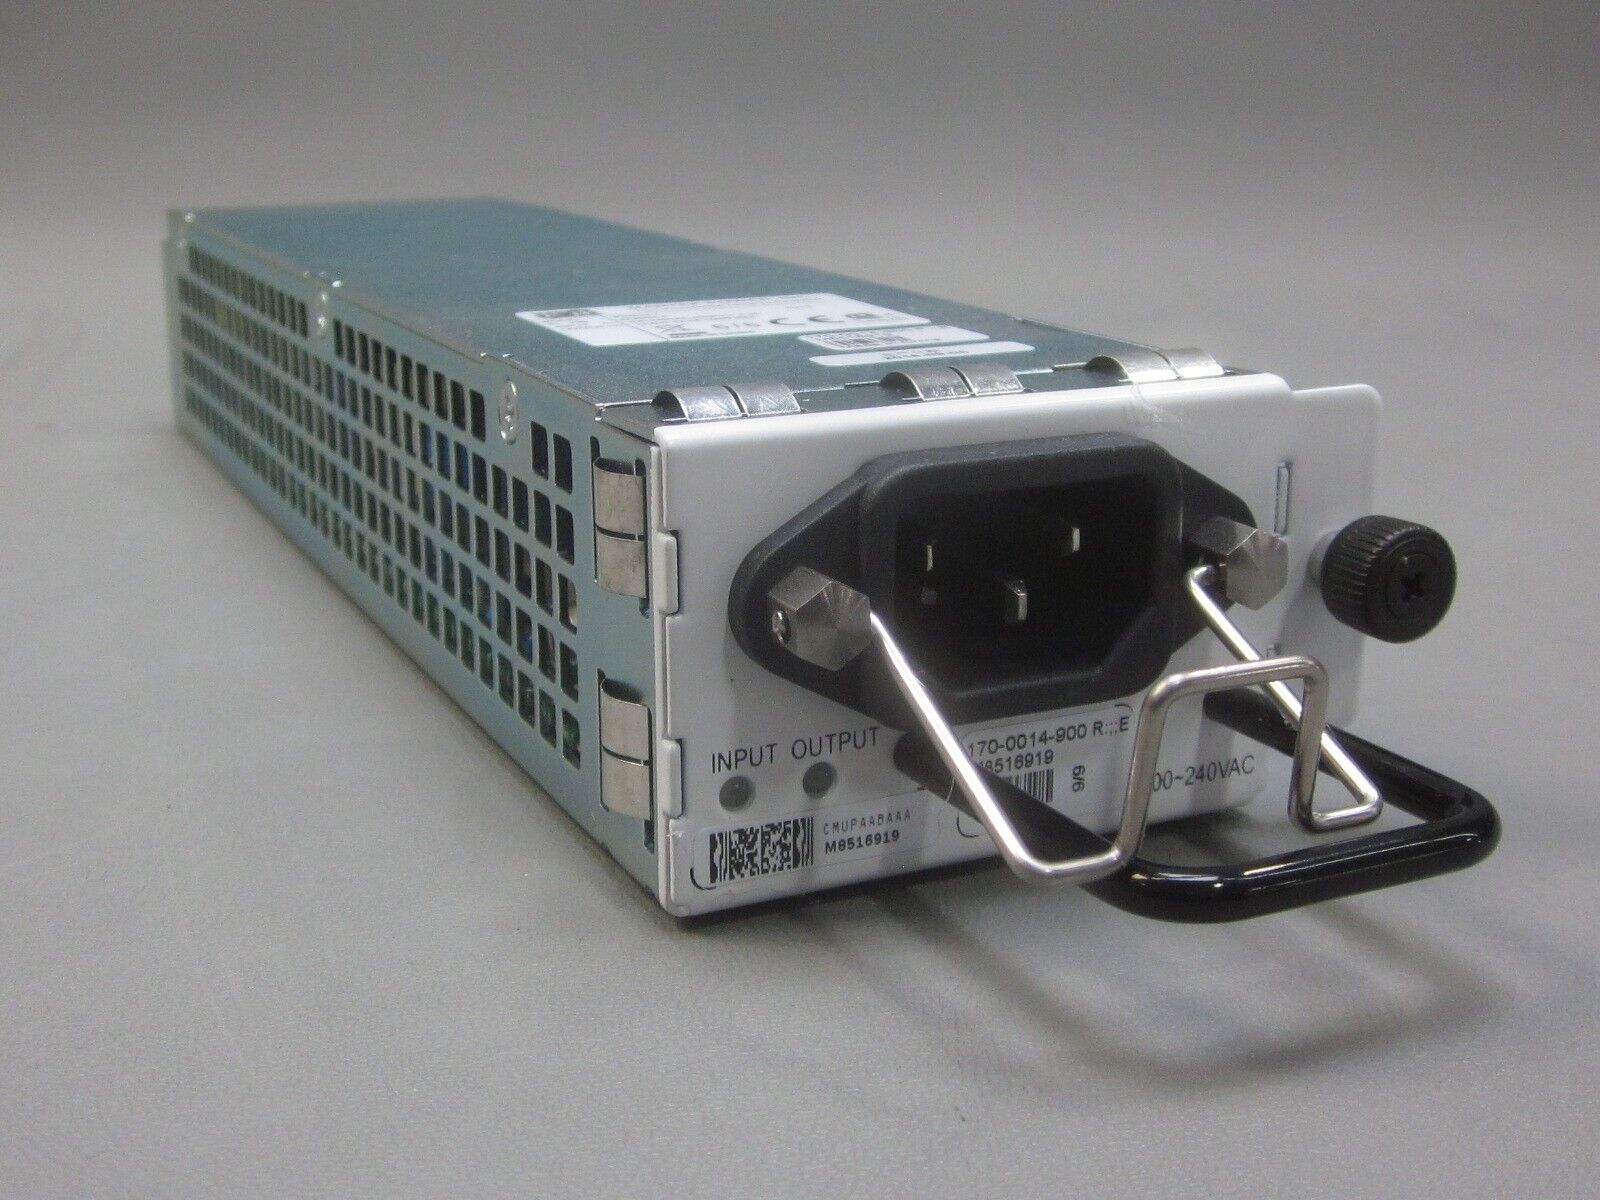 CIENA AC DC POWER SUPPLY UNIT 170-0014-900 OUTPUT = 12VDC 12.5A 150W